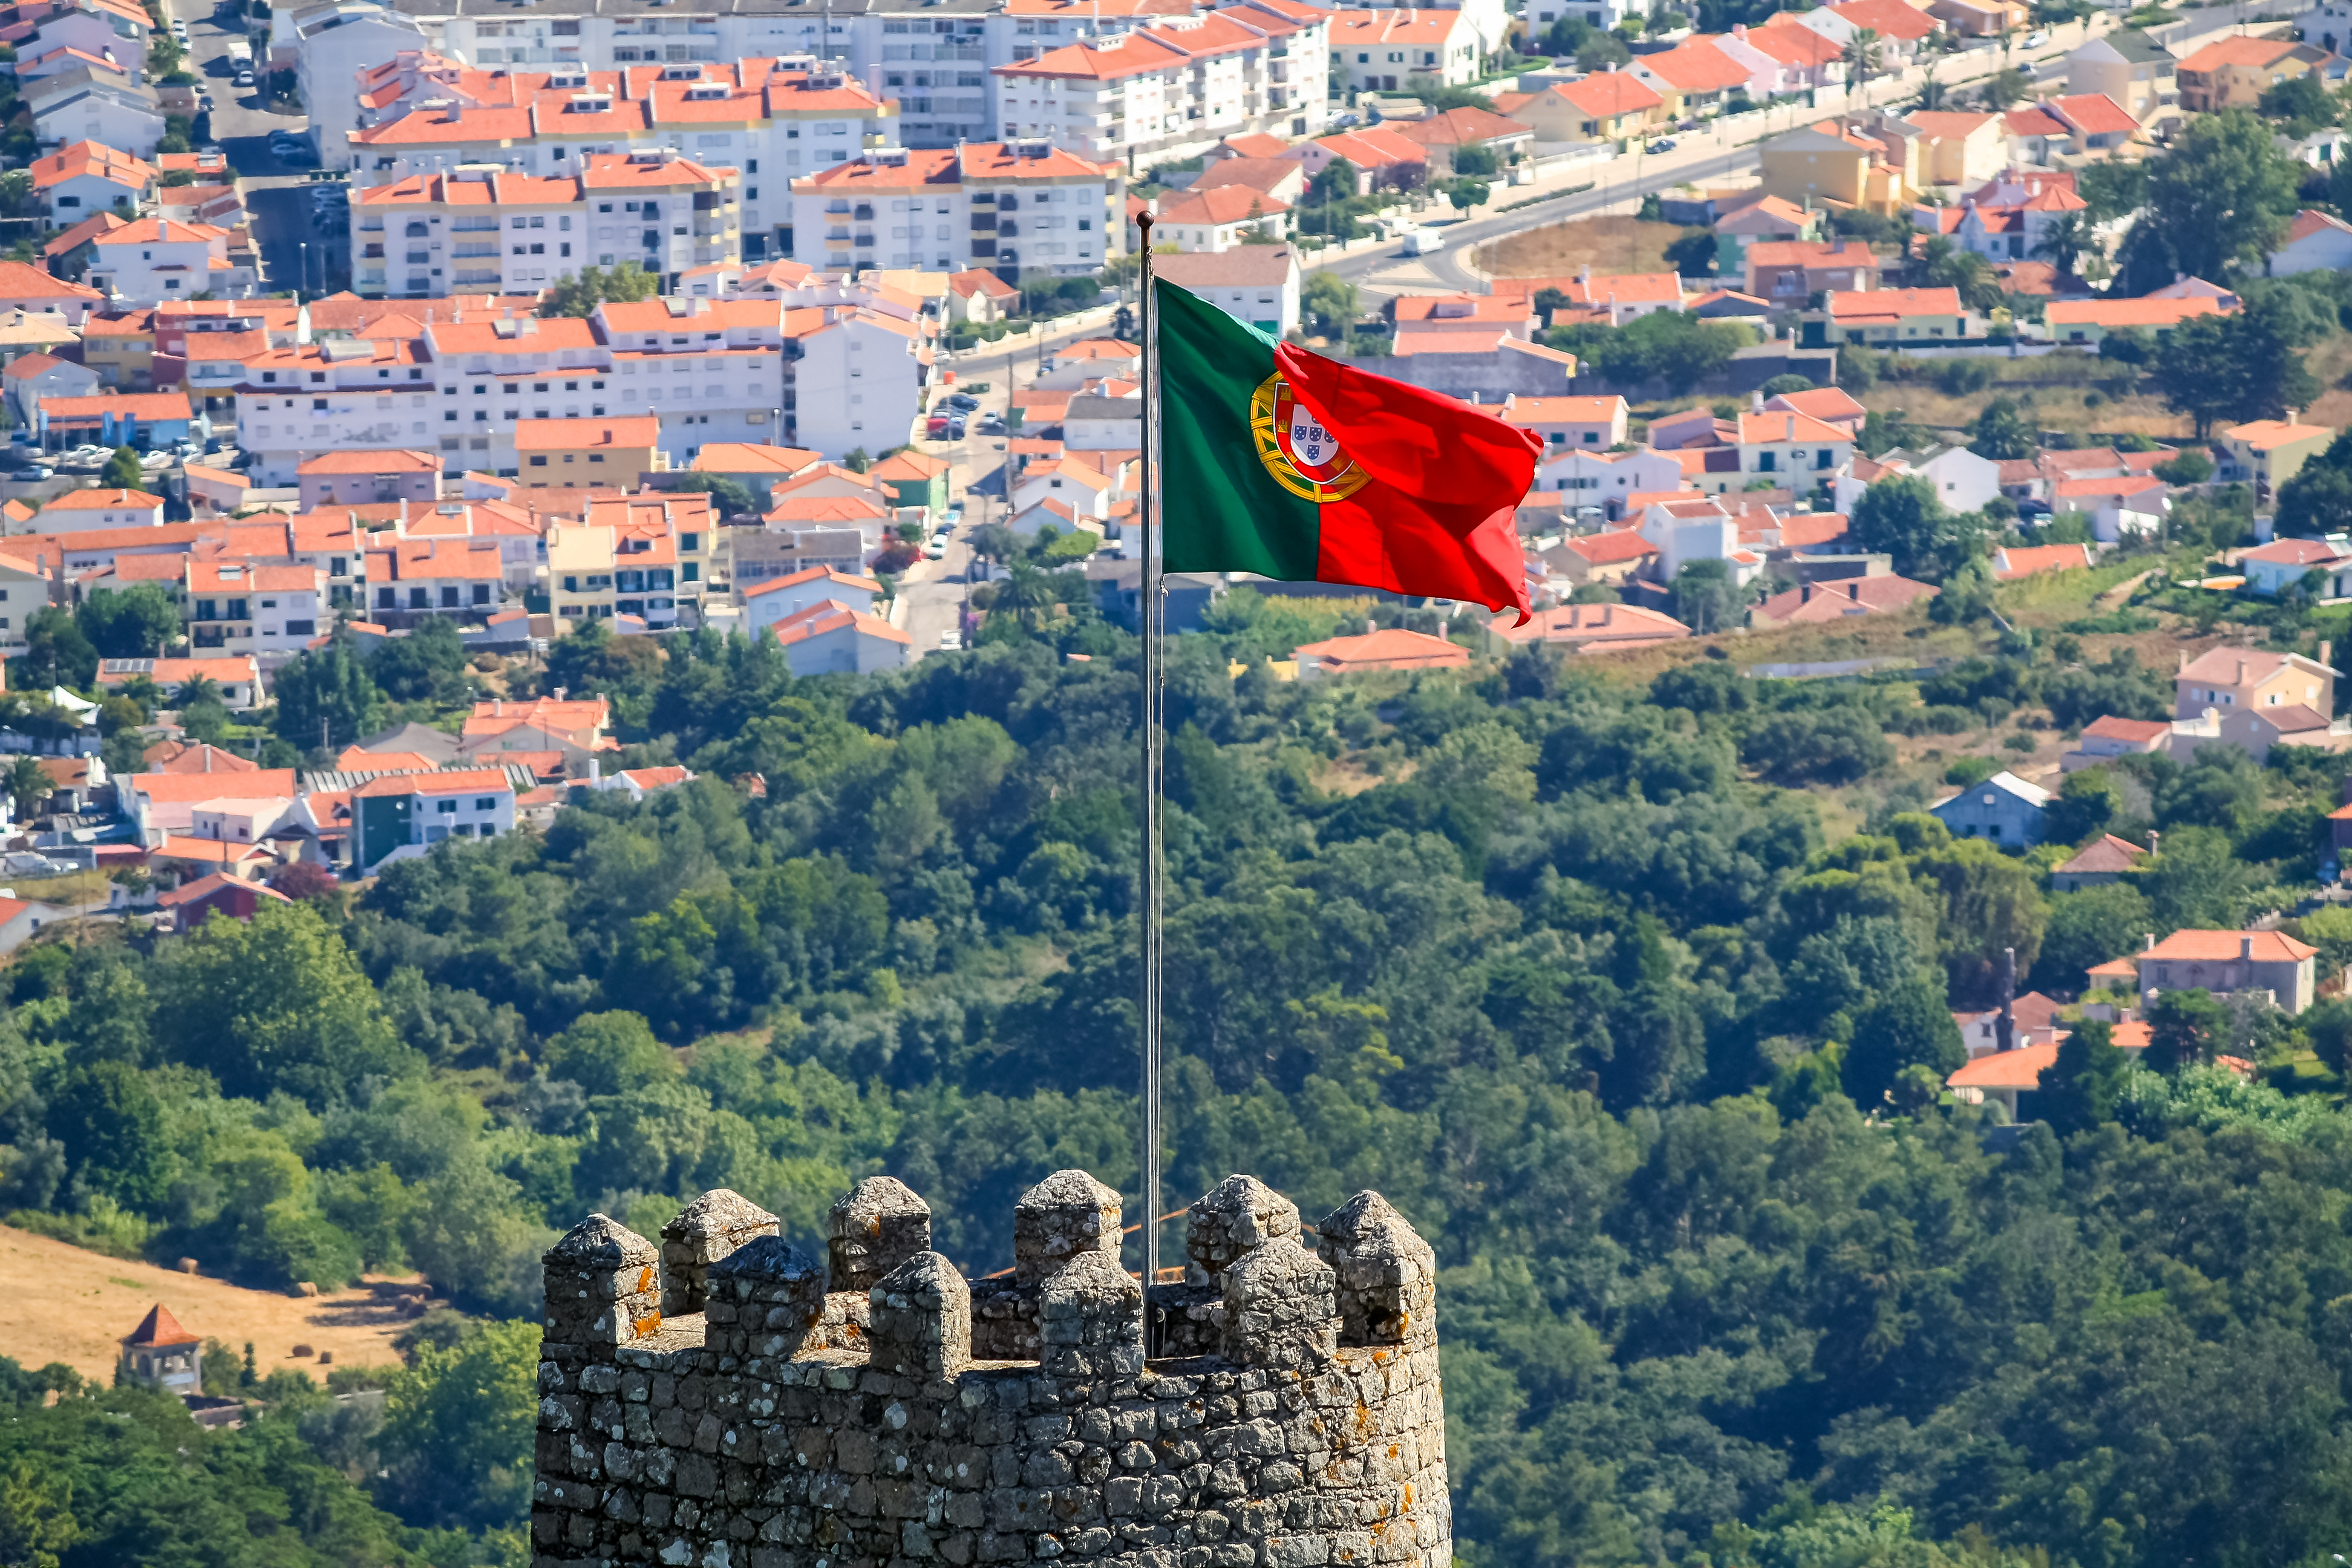 Flag symbolizing Portuguese citizenship also for Sephardim